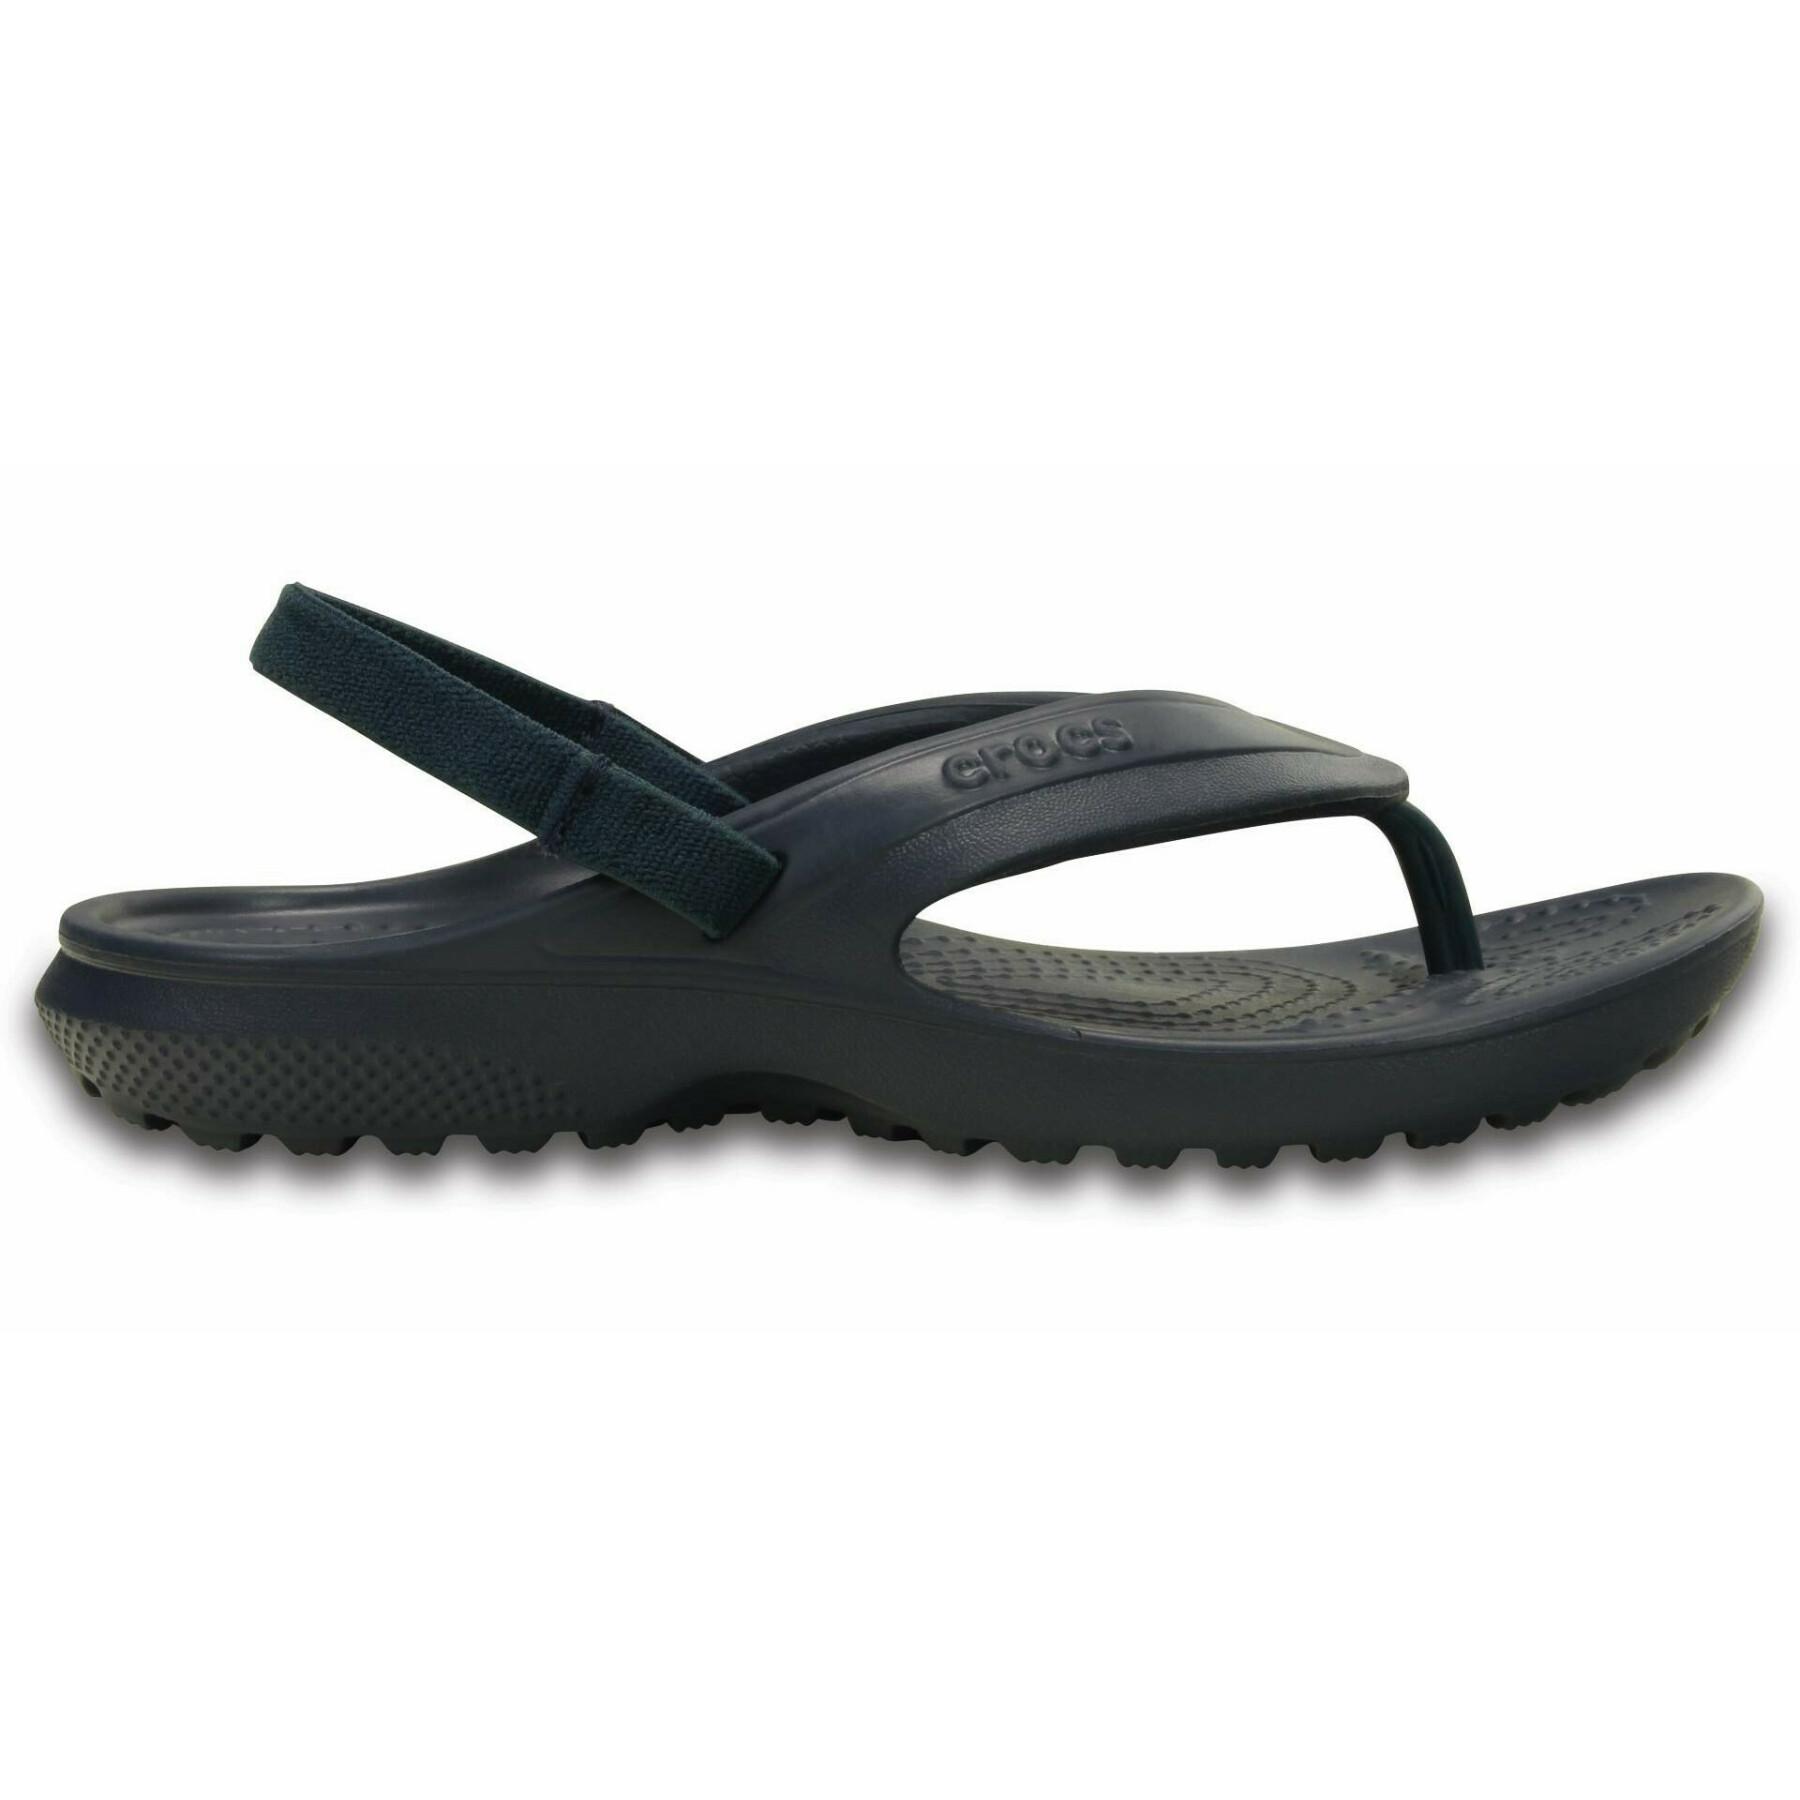 Children's flip-flops Crocs classic flip